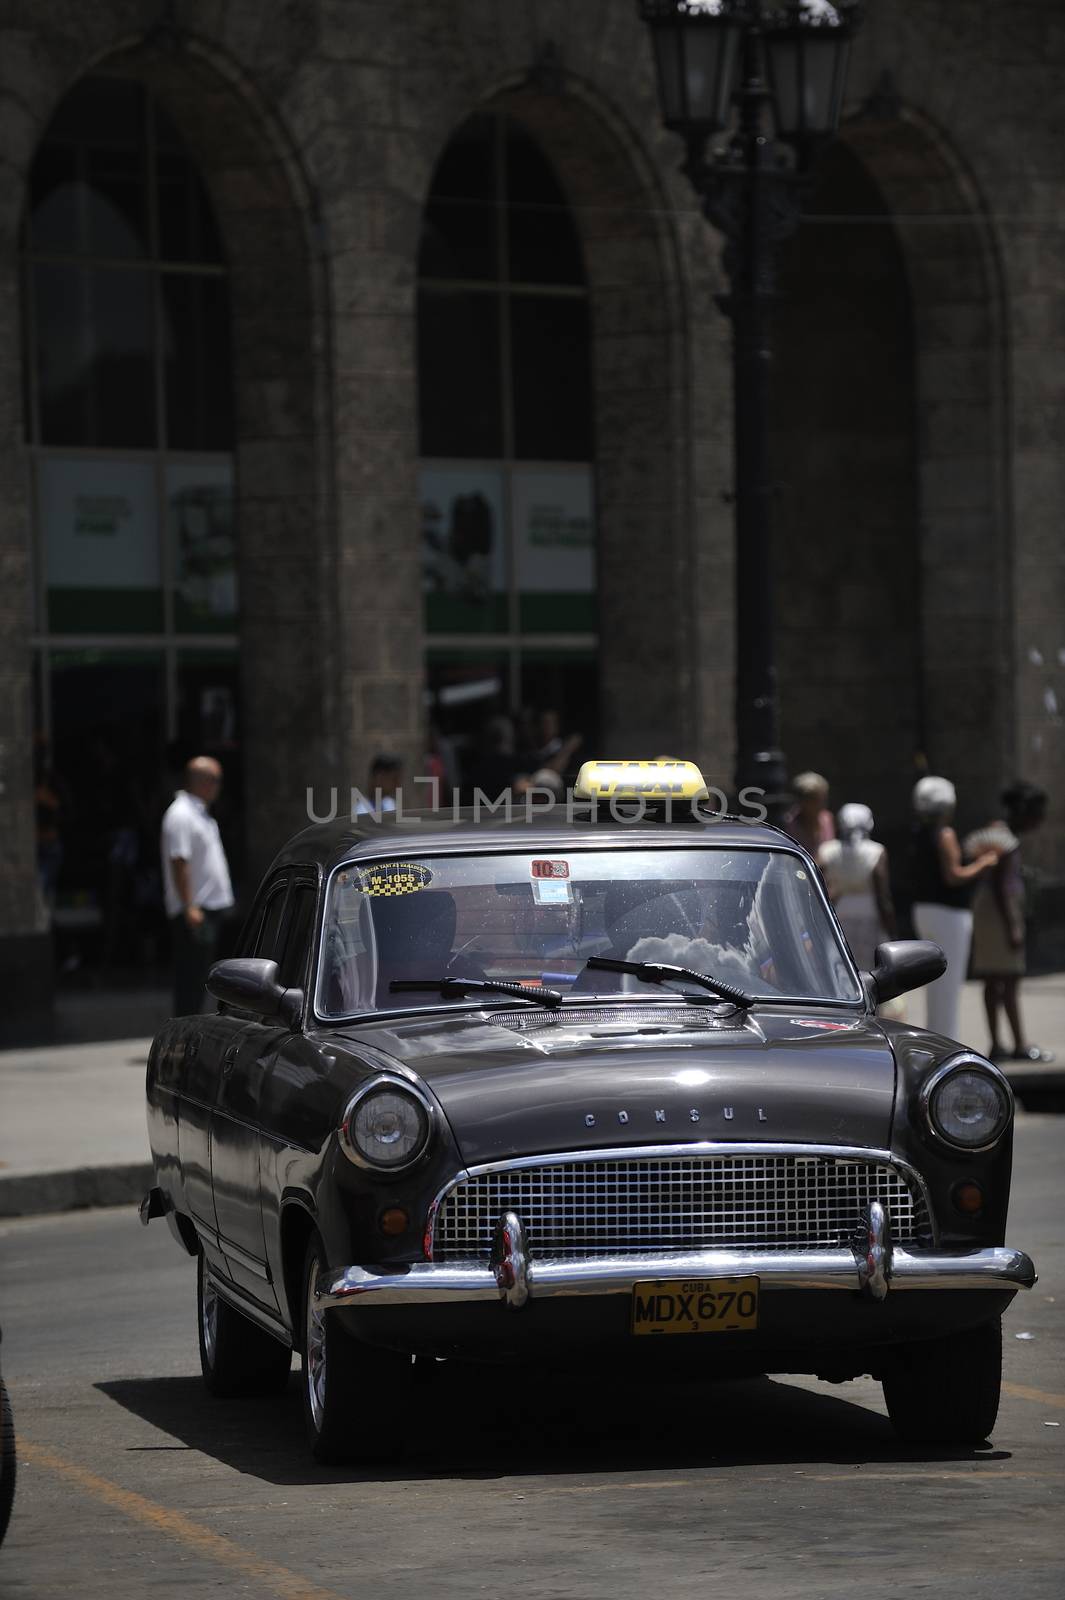 Cars of Cuba by kertis